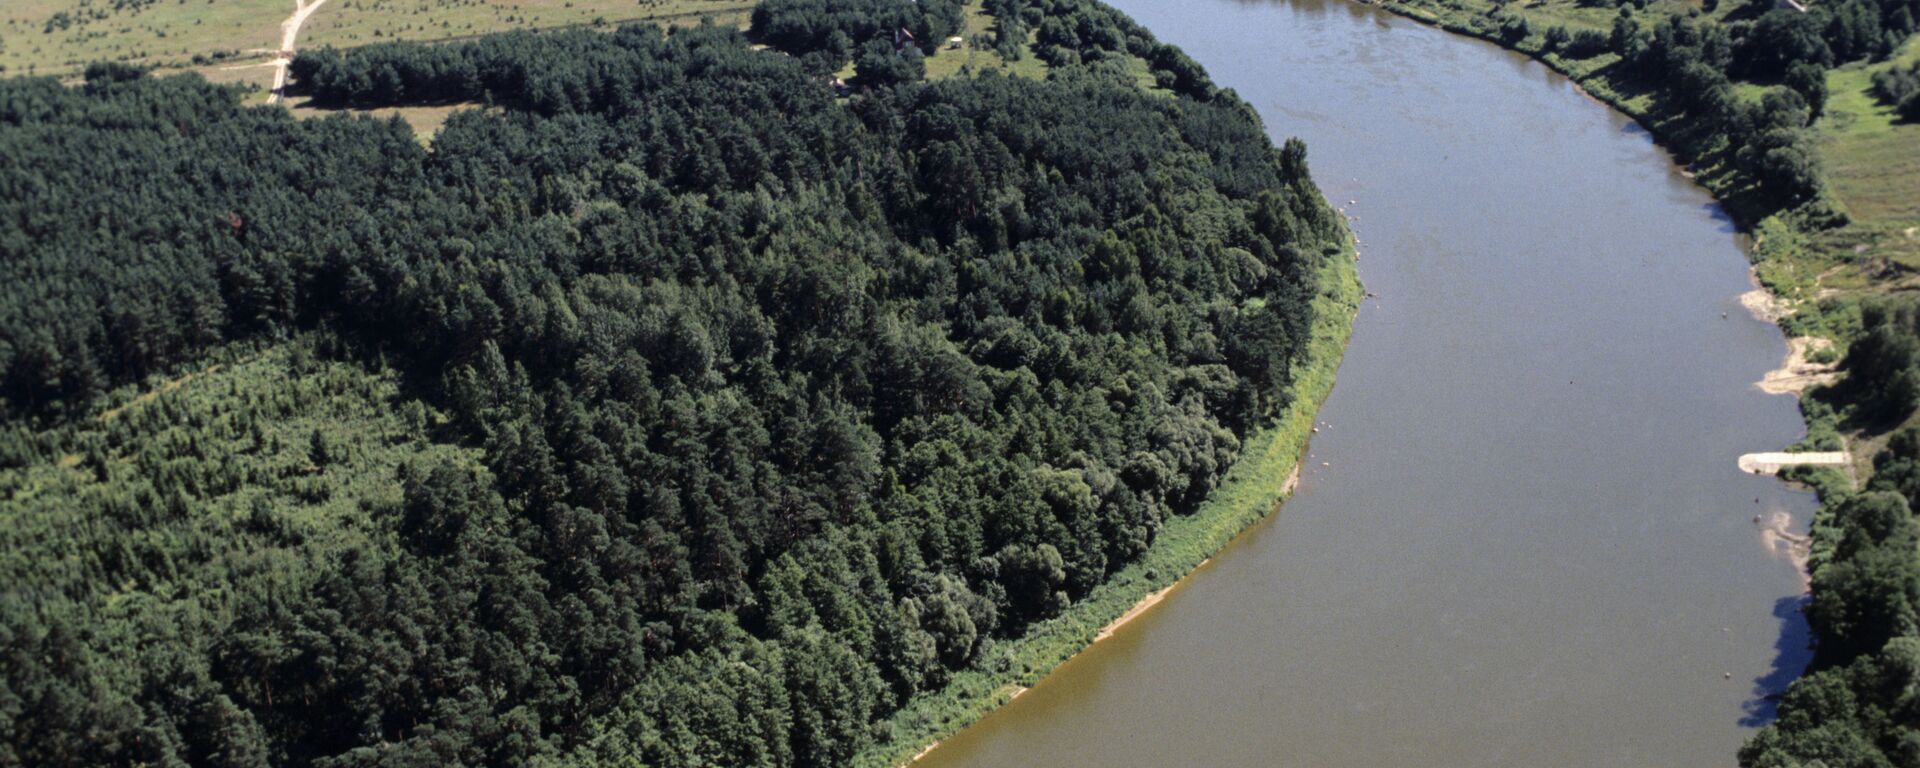 Upė ir miškai - Sputnik Lietuva, 1920, 13.05.2021